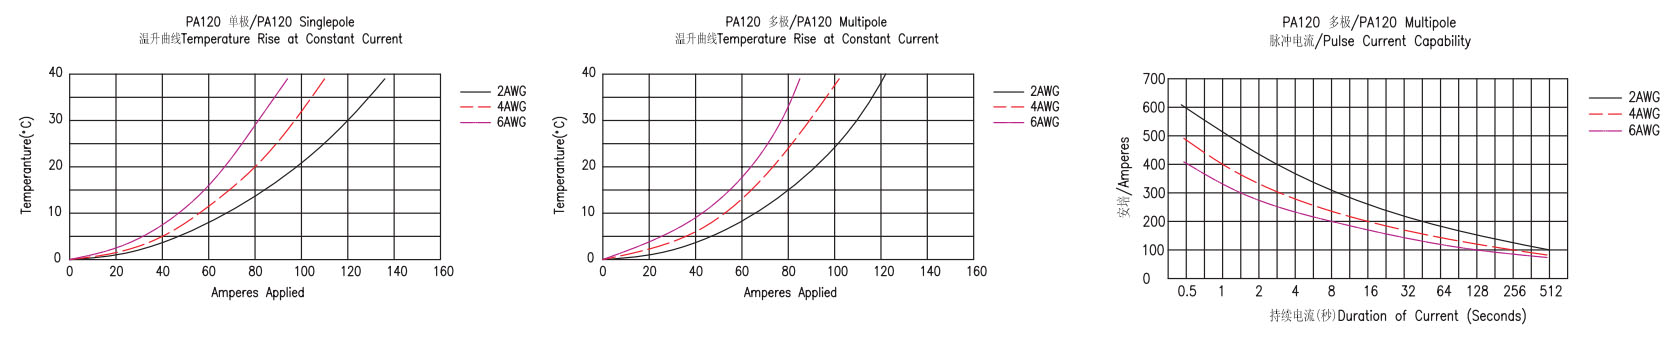 PA120-5 қуат қосқышының комбинациясы